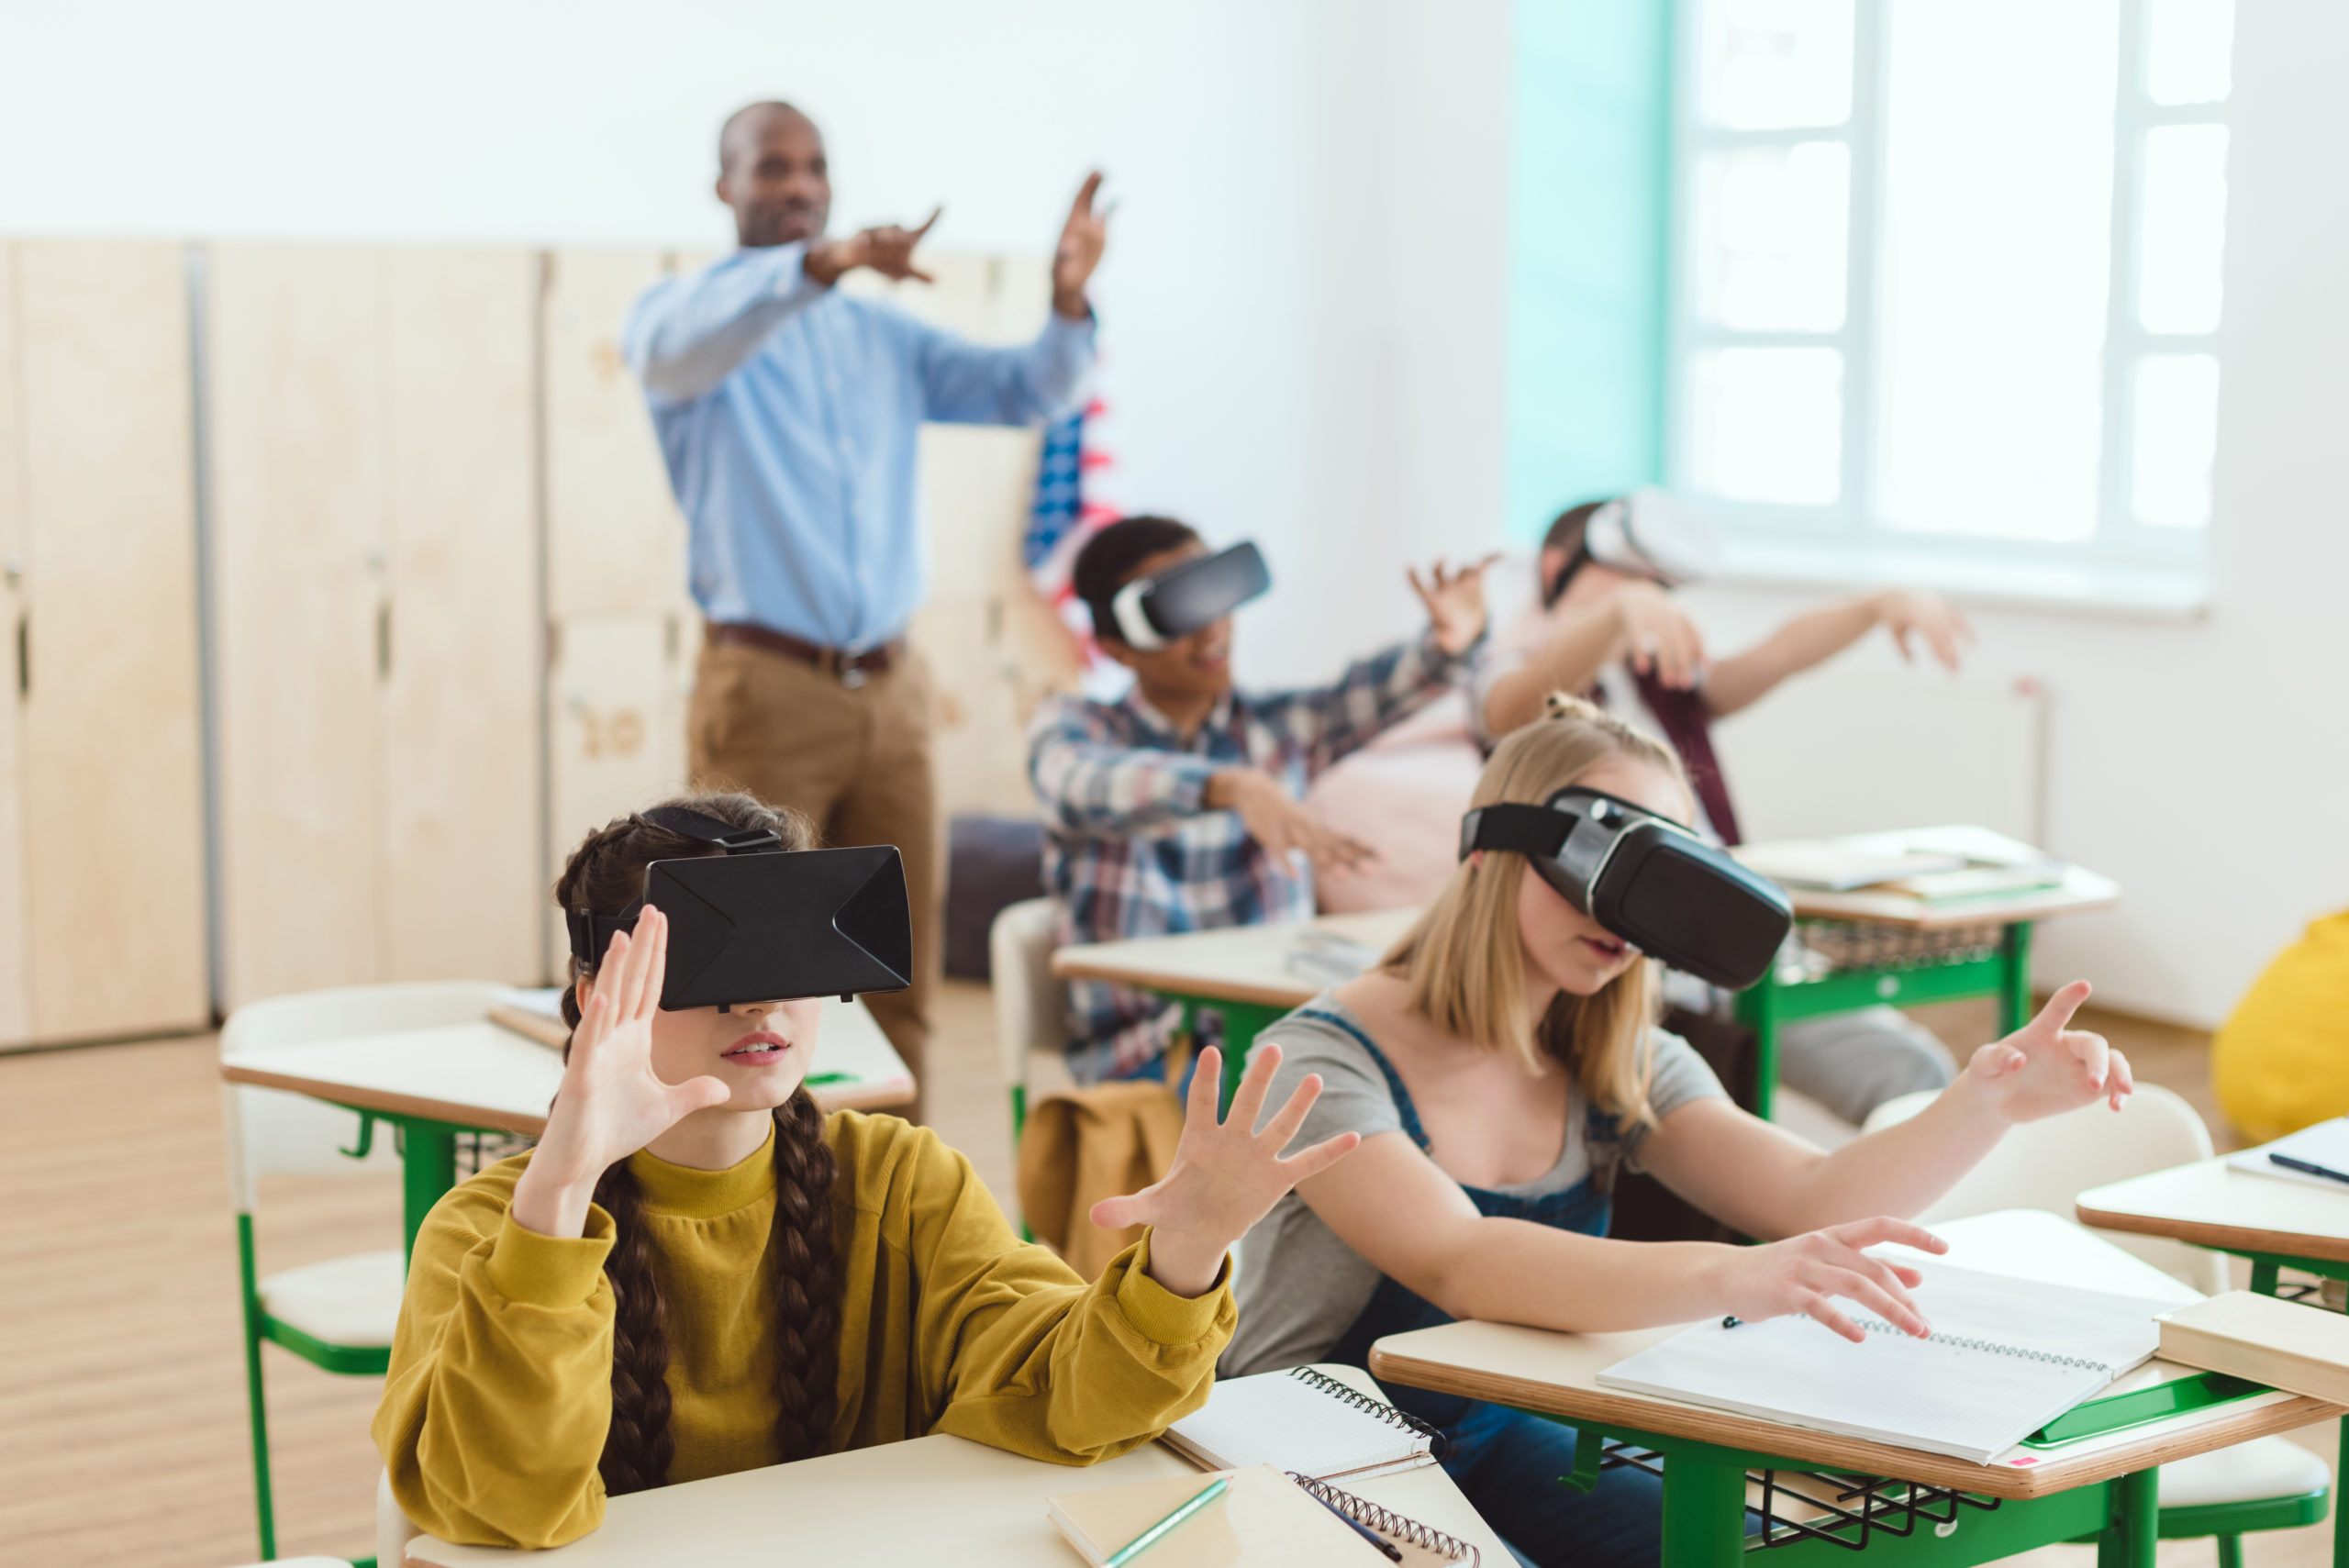 Школа vr. Образование будущего. Иммерсивные технологии в школе. VR В школе. Образование в будущем.